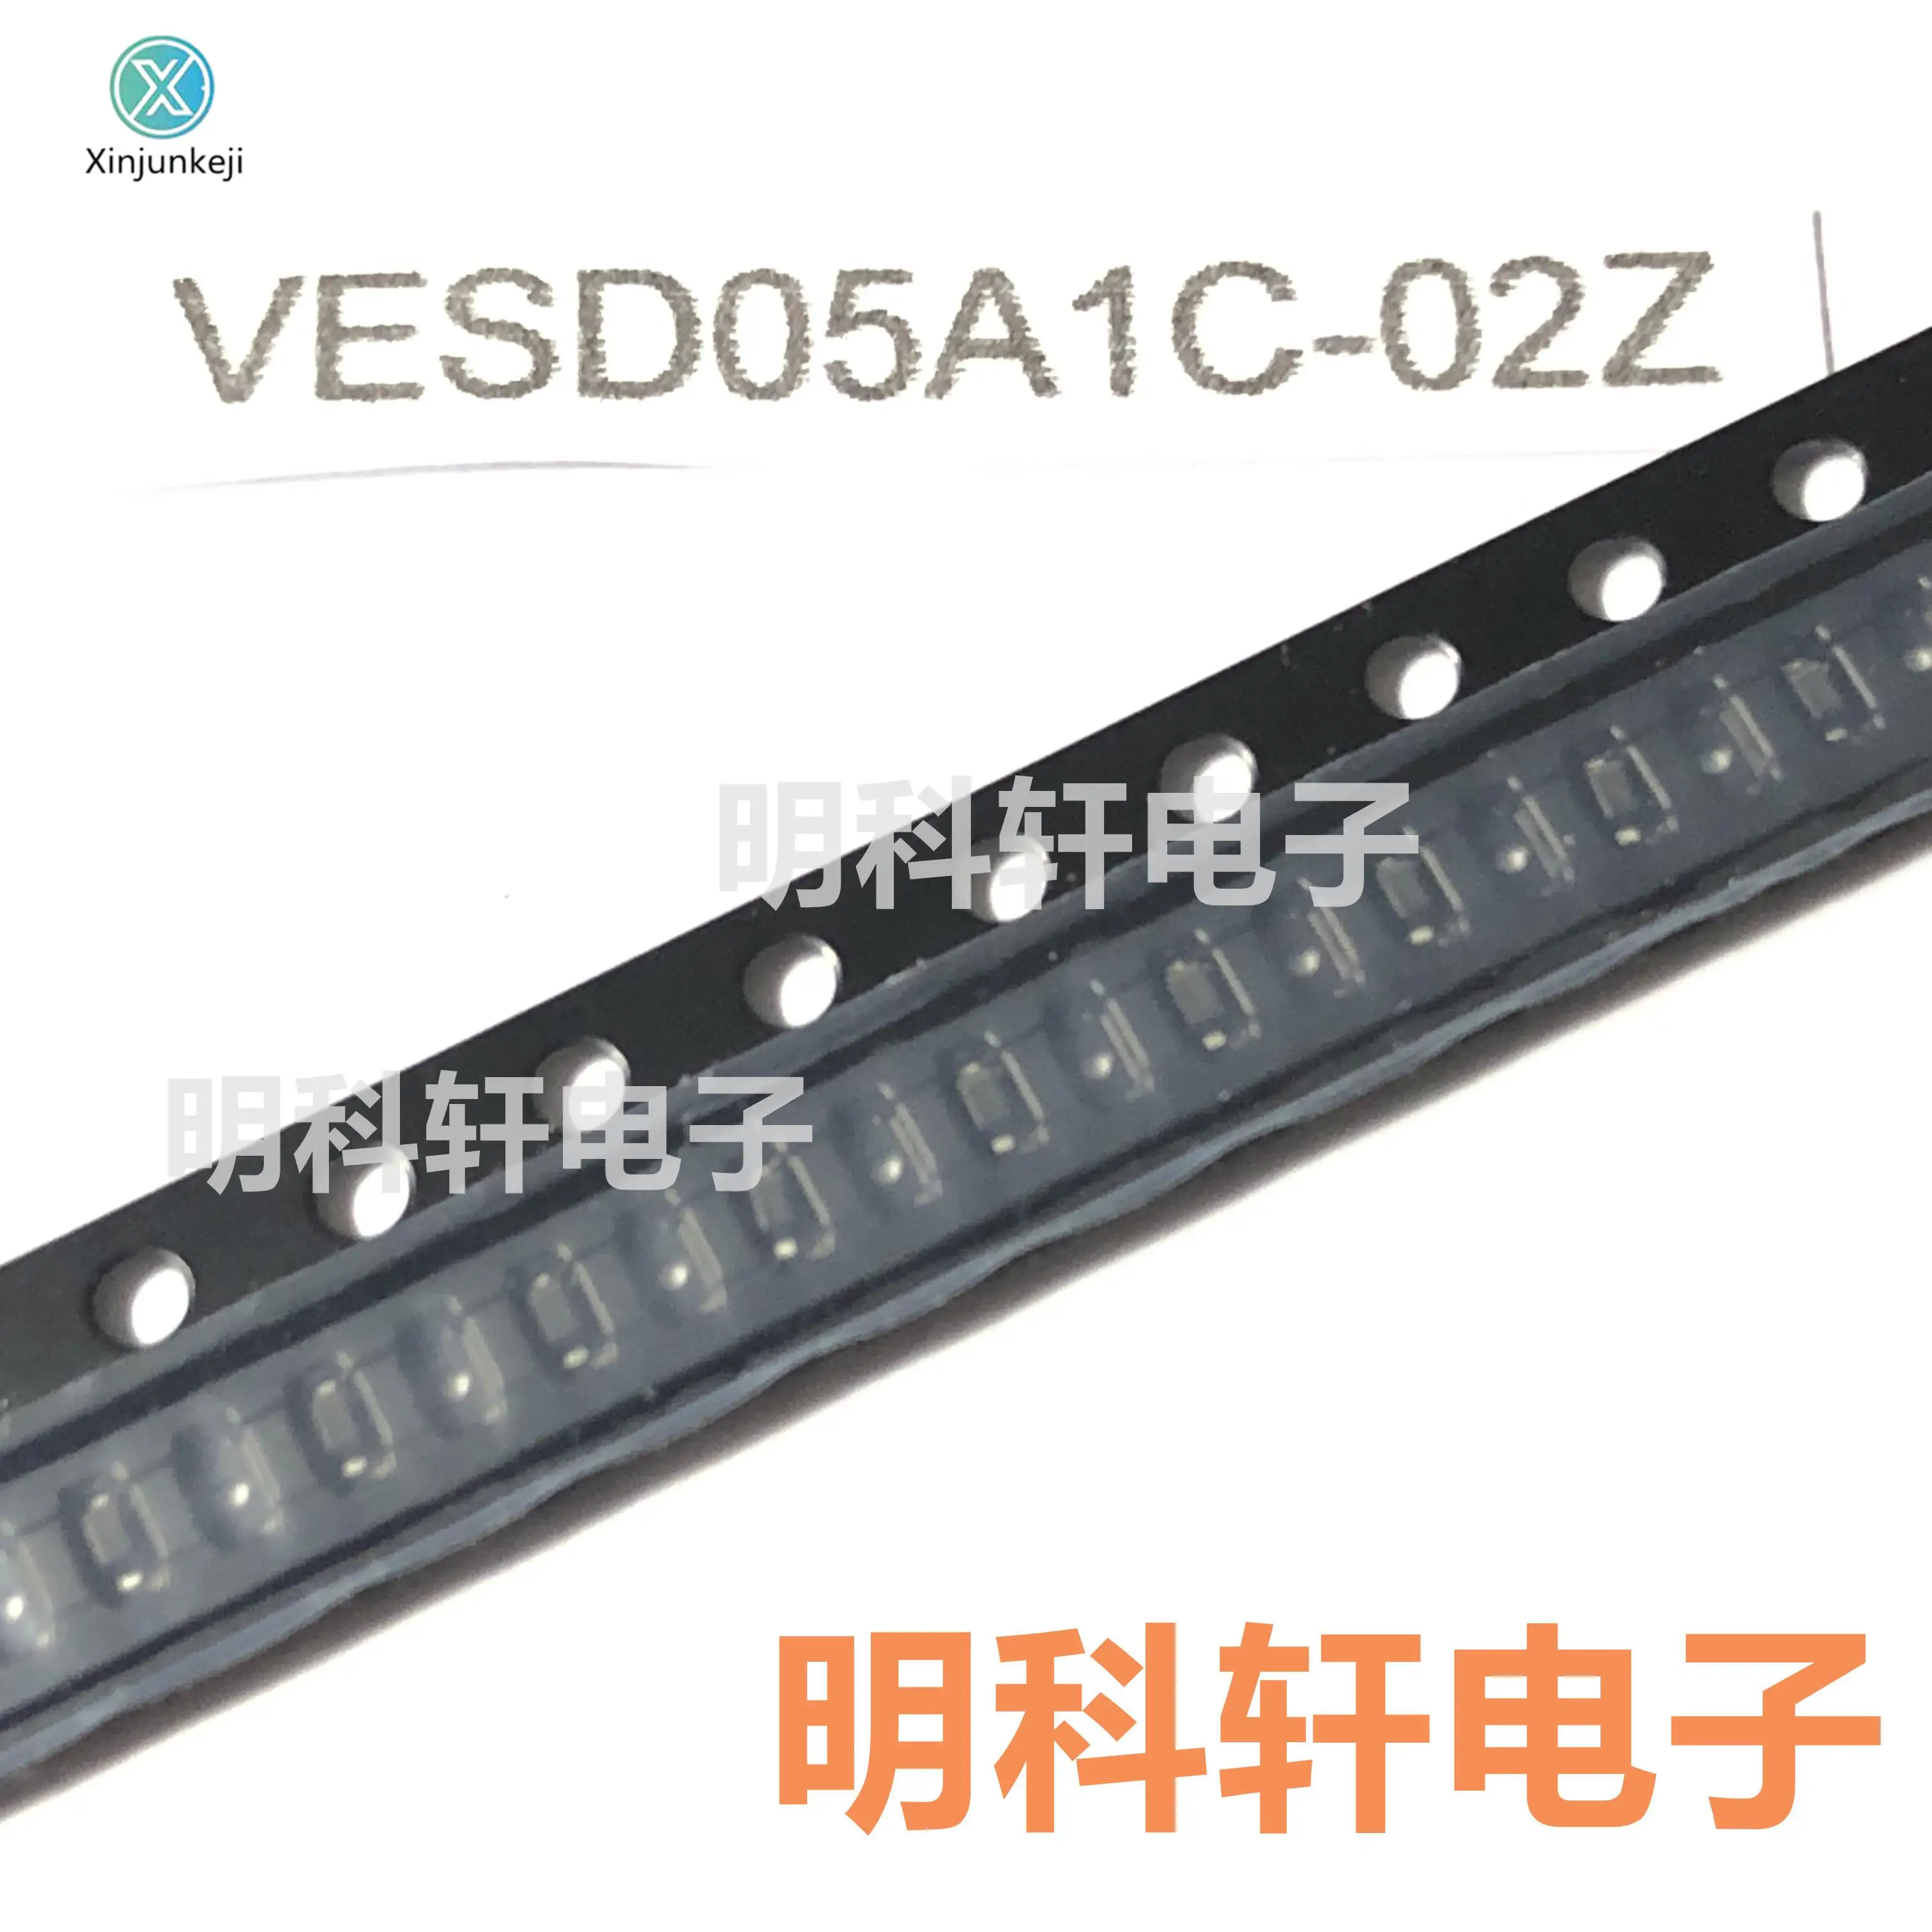 

20pcs orginal new VESD05A1C-02Z-GS08